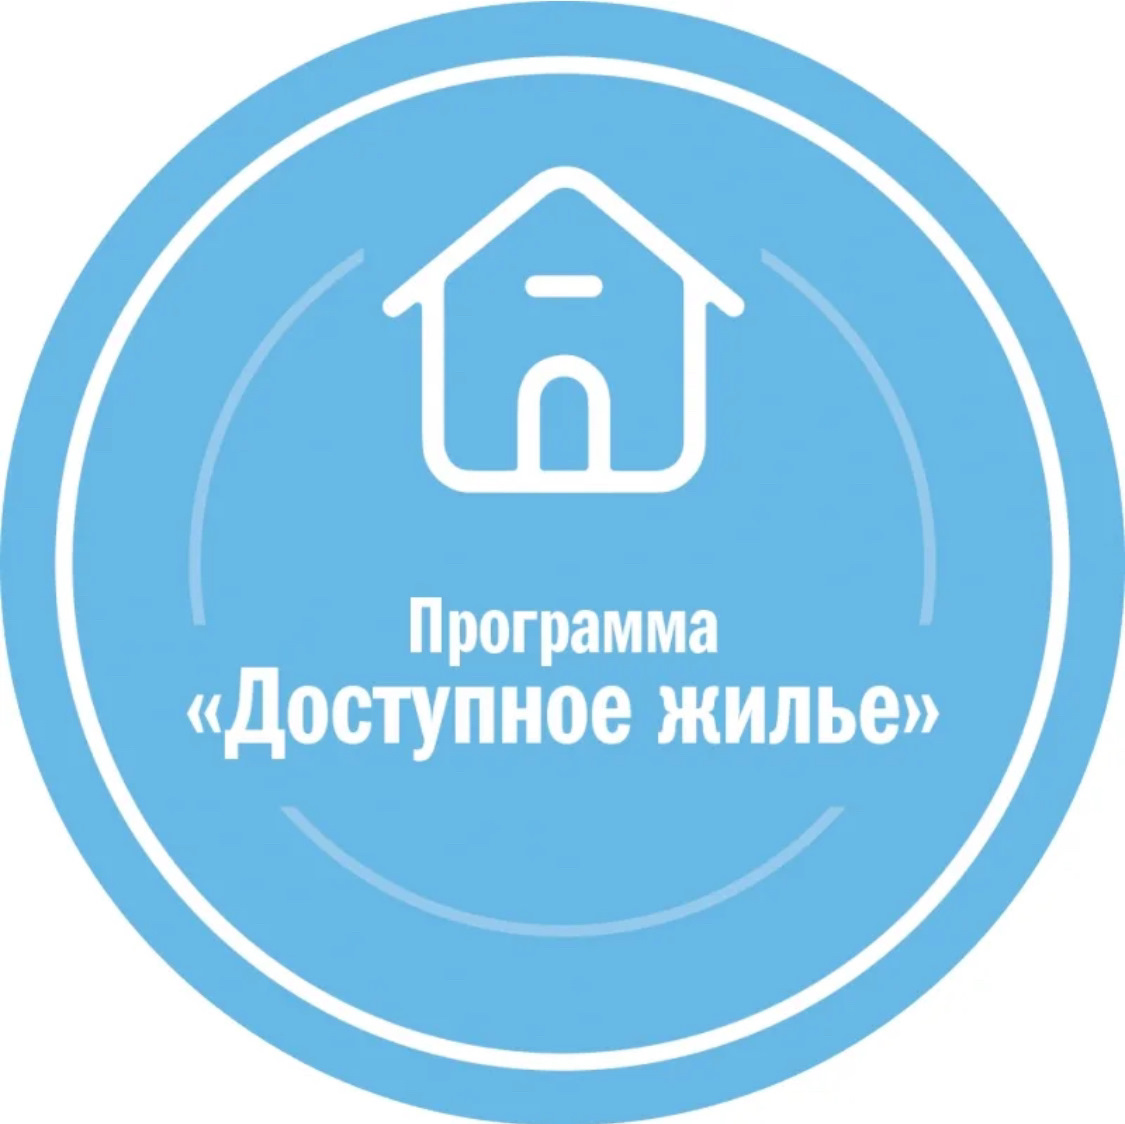 Доступное жилье. Доступное жилье логотип. Программа жилье. Логотип жилищные программы.